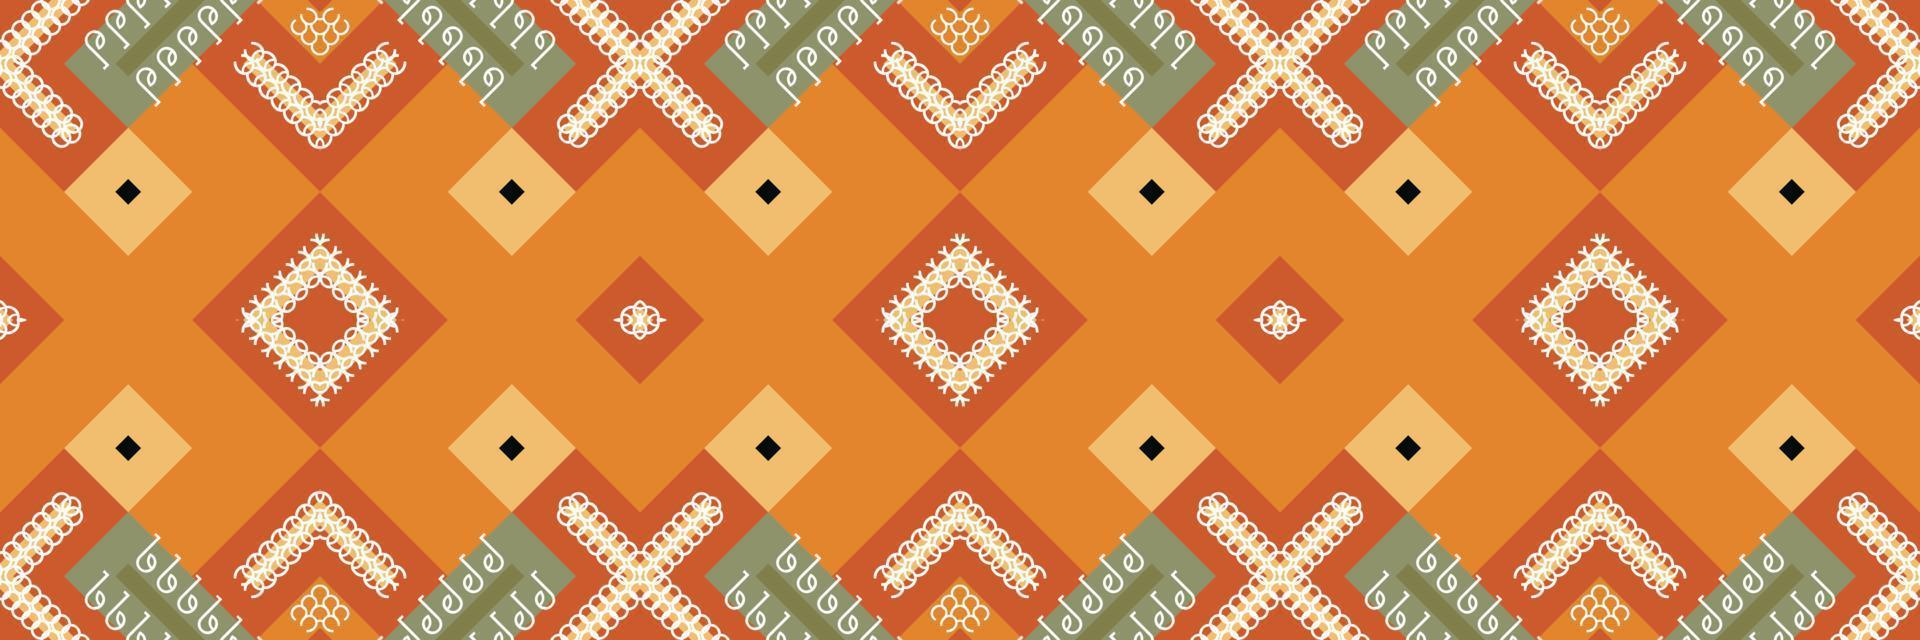 ethnisches aztekisches ikat nahtloses muster textil ikat aztekisches nahtloses muster digitales vektordesign für druck saree kurti borneo stoff aztekische pinselsymbole musterdesigner vektor